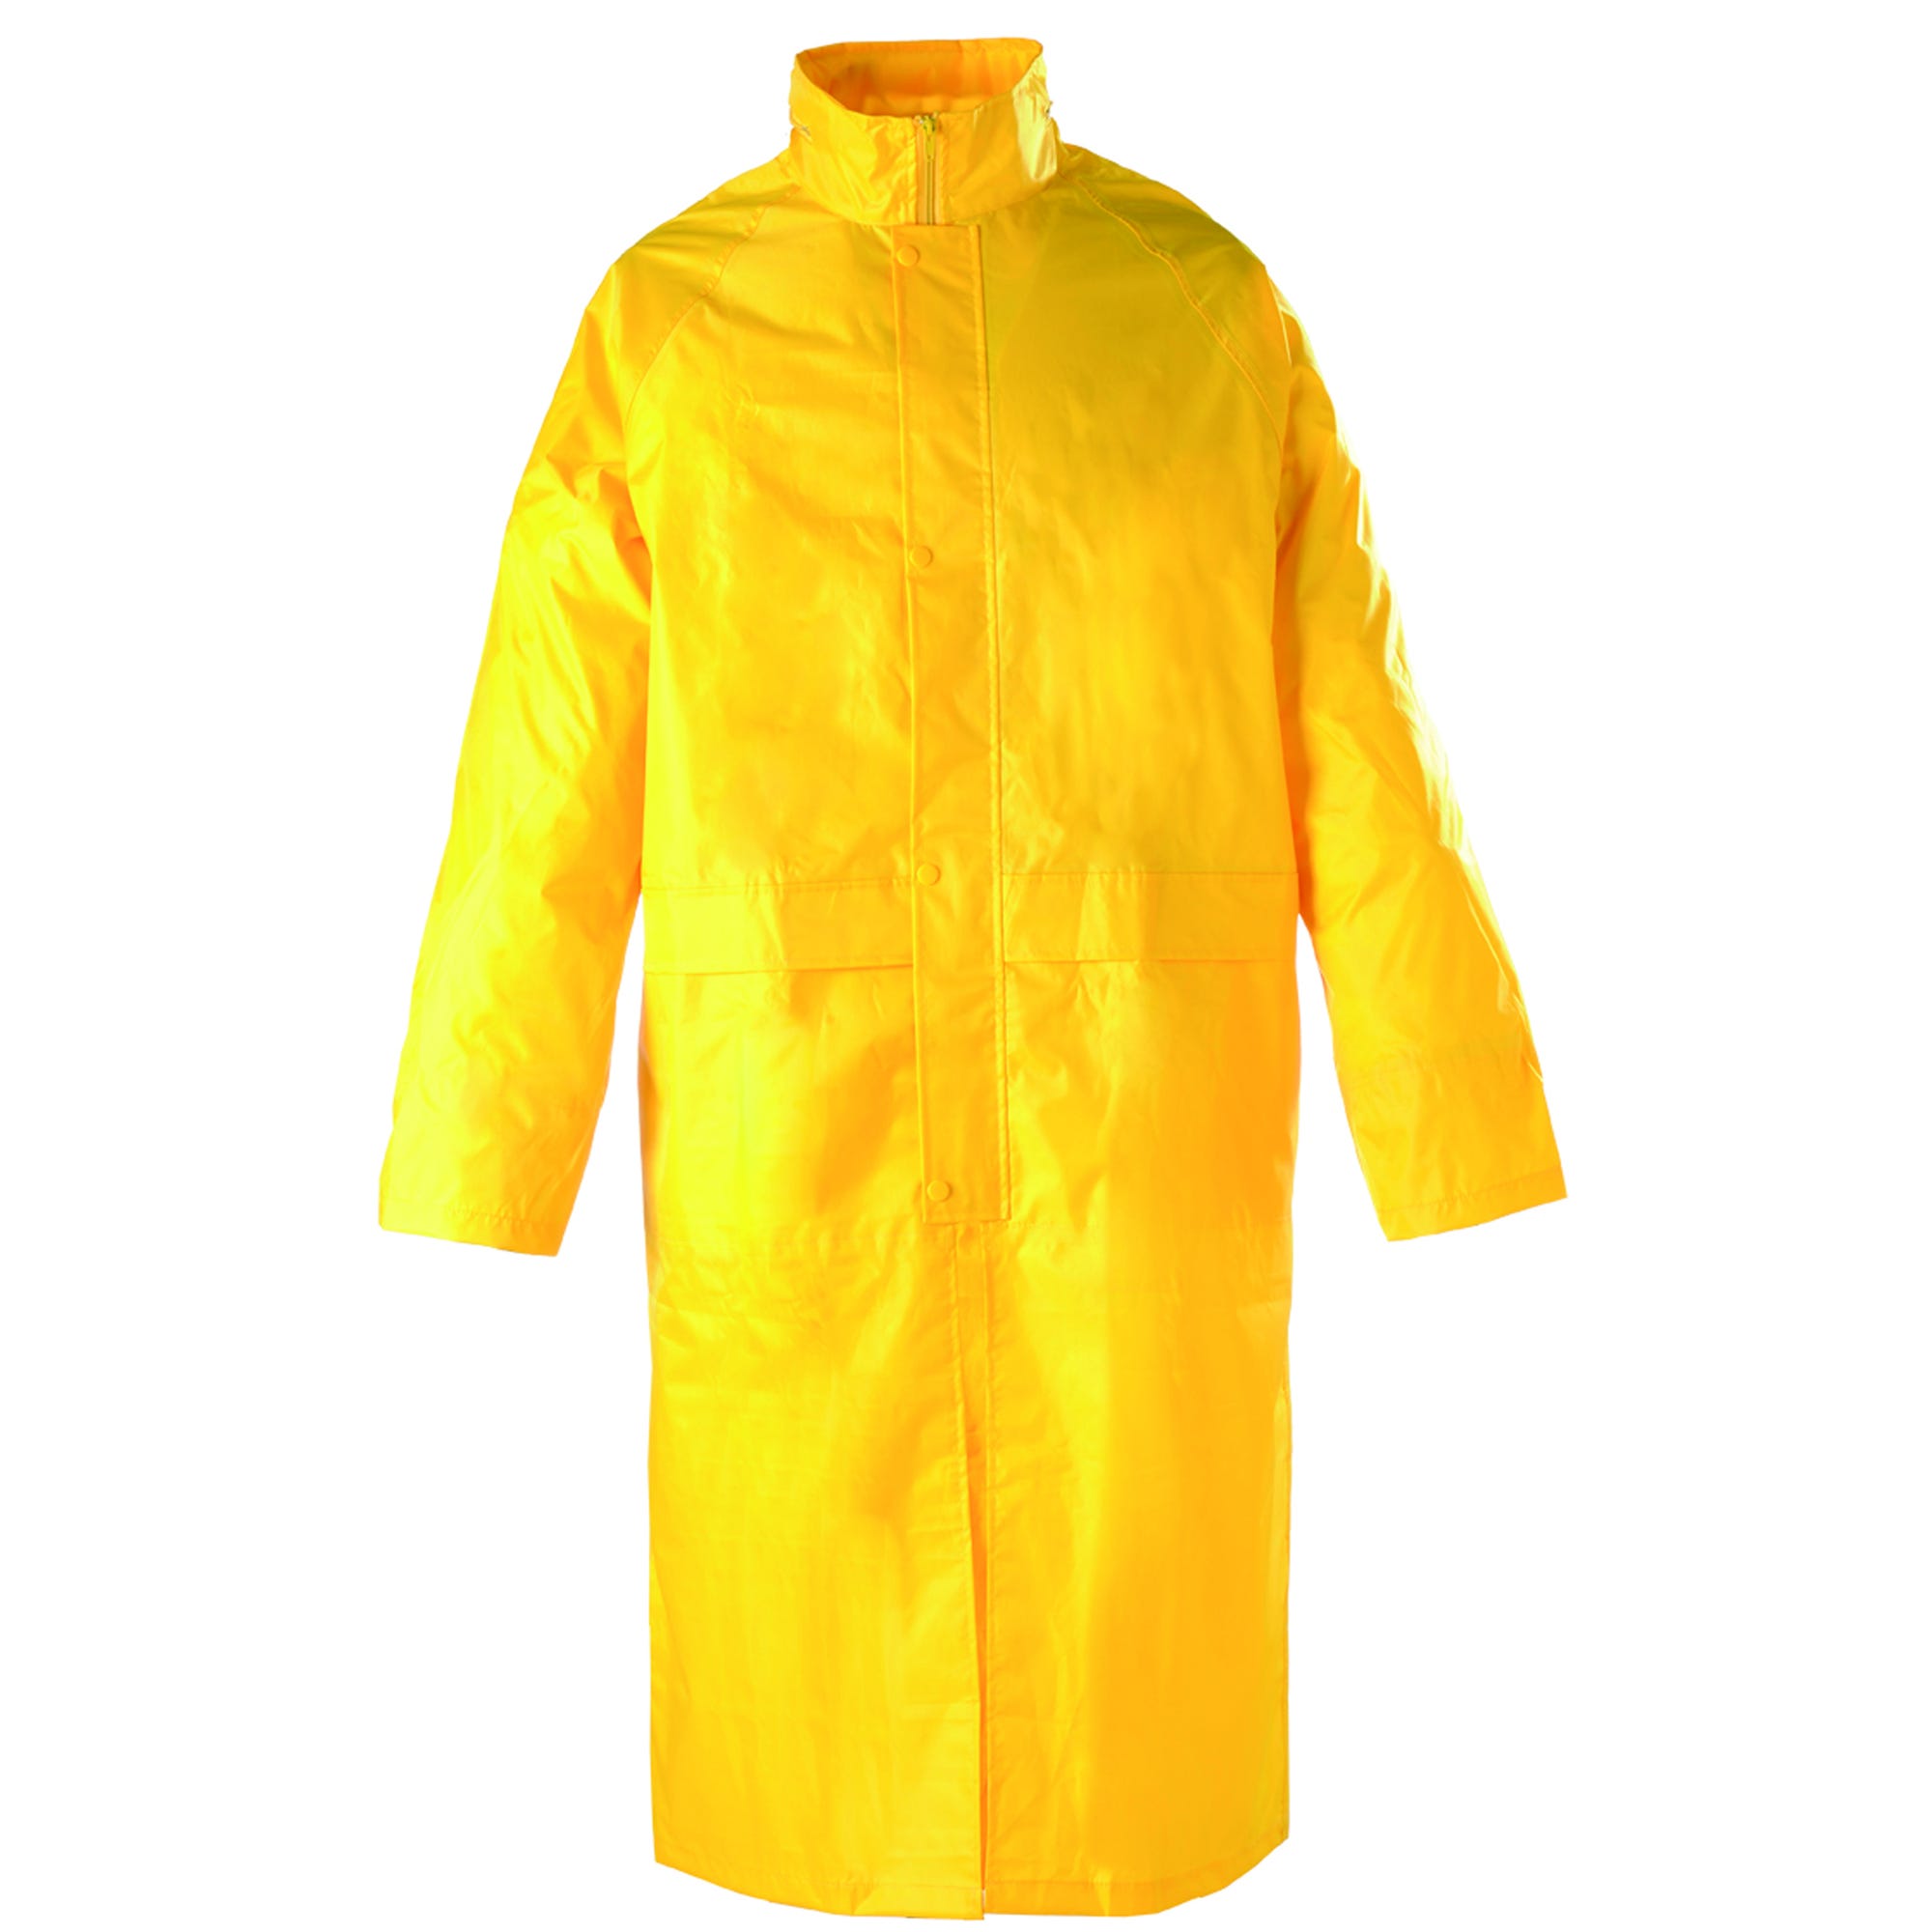 Manteau de pluie PVC, jaune, 185g/m² - COVERGUARD - Taille XL 1